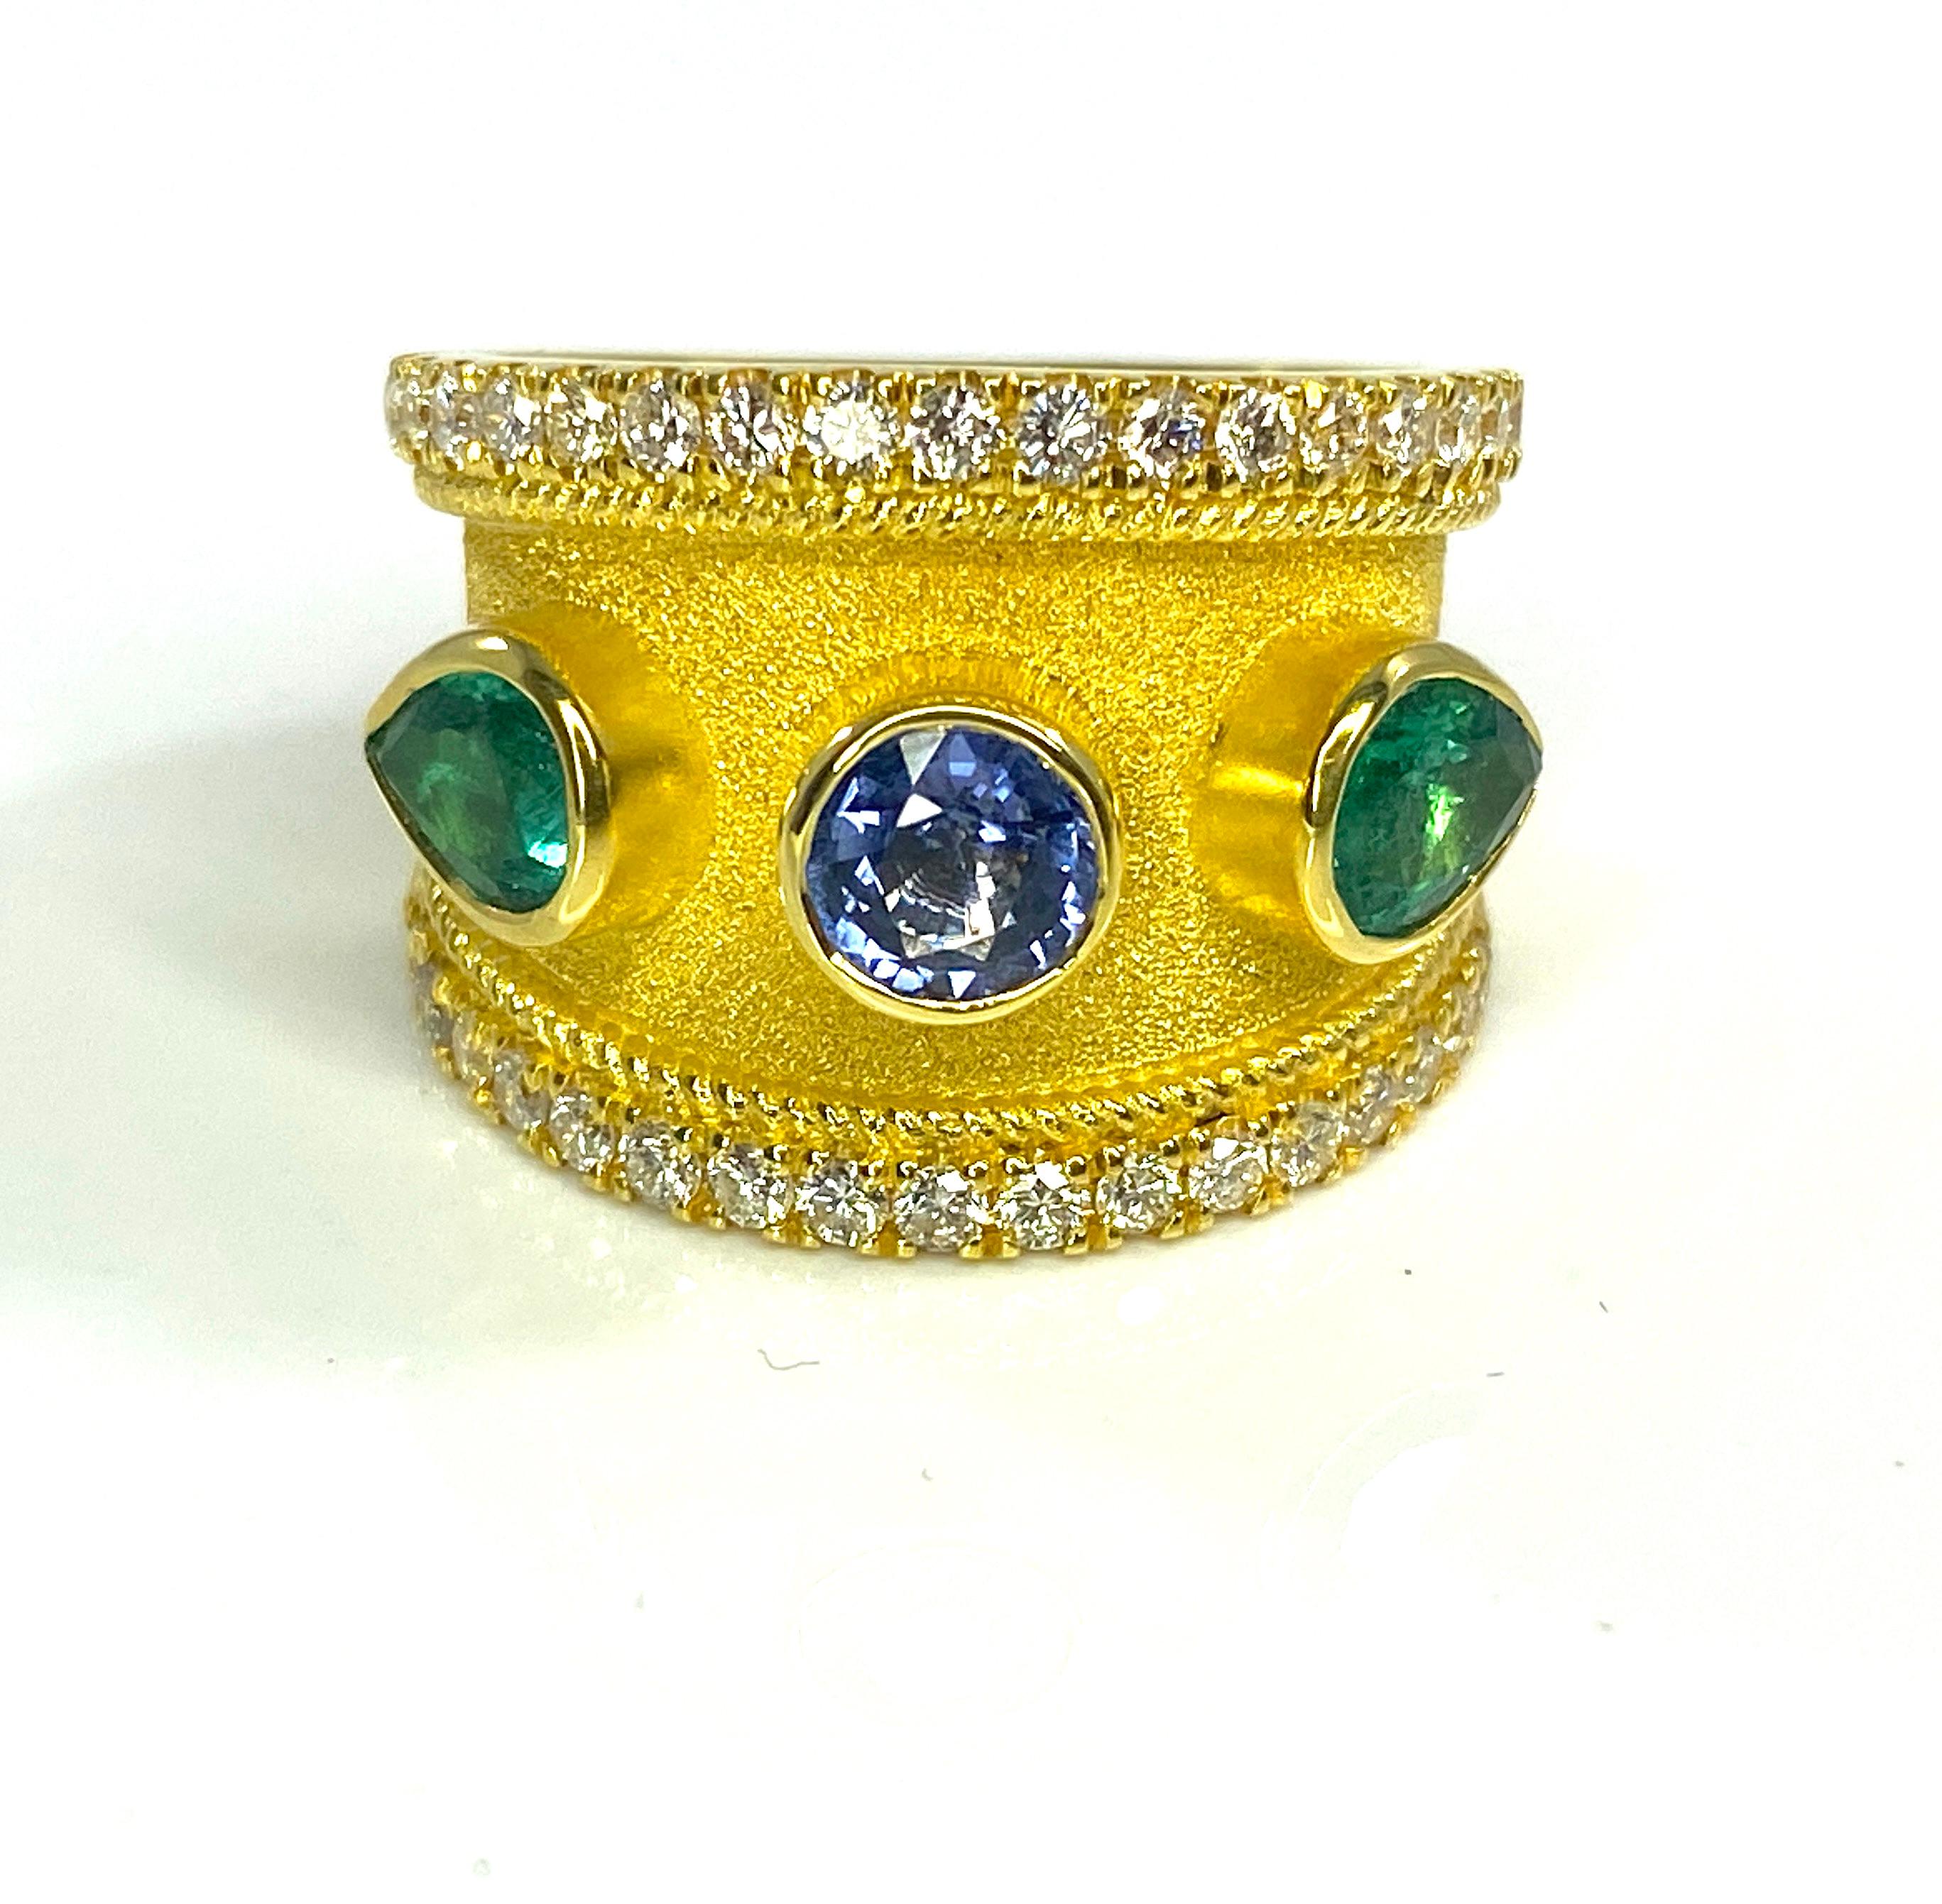 Dies ist eine atemberaubende S.Georgios Designer Ring in 18 Karat Gelbgold alle mit einem byzantinischen Samt Hintergrund verziert. In der Mitte dieses wunderschönen Rings befinden sich ein blauer Saphir im Brillantschliff mit 0,64 Karat und 2